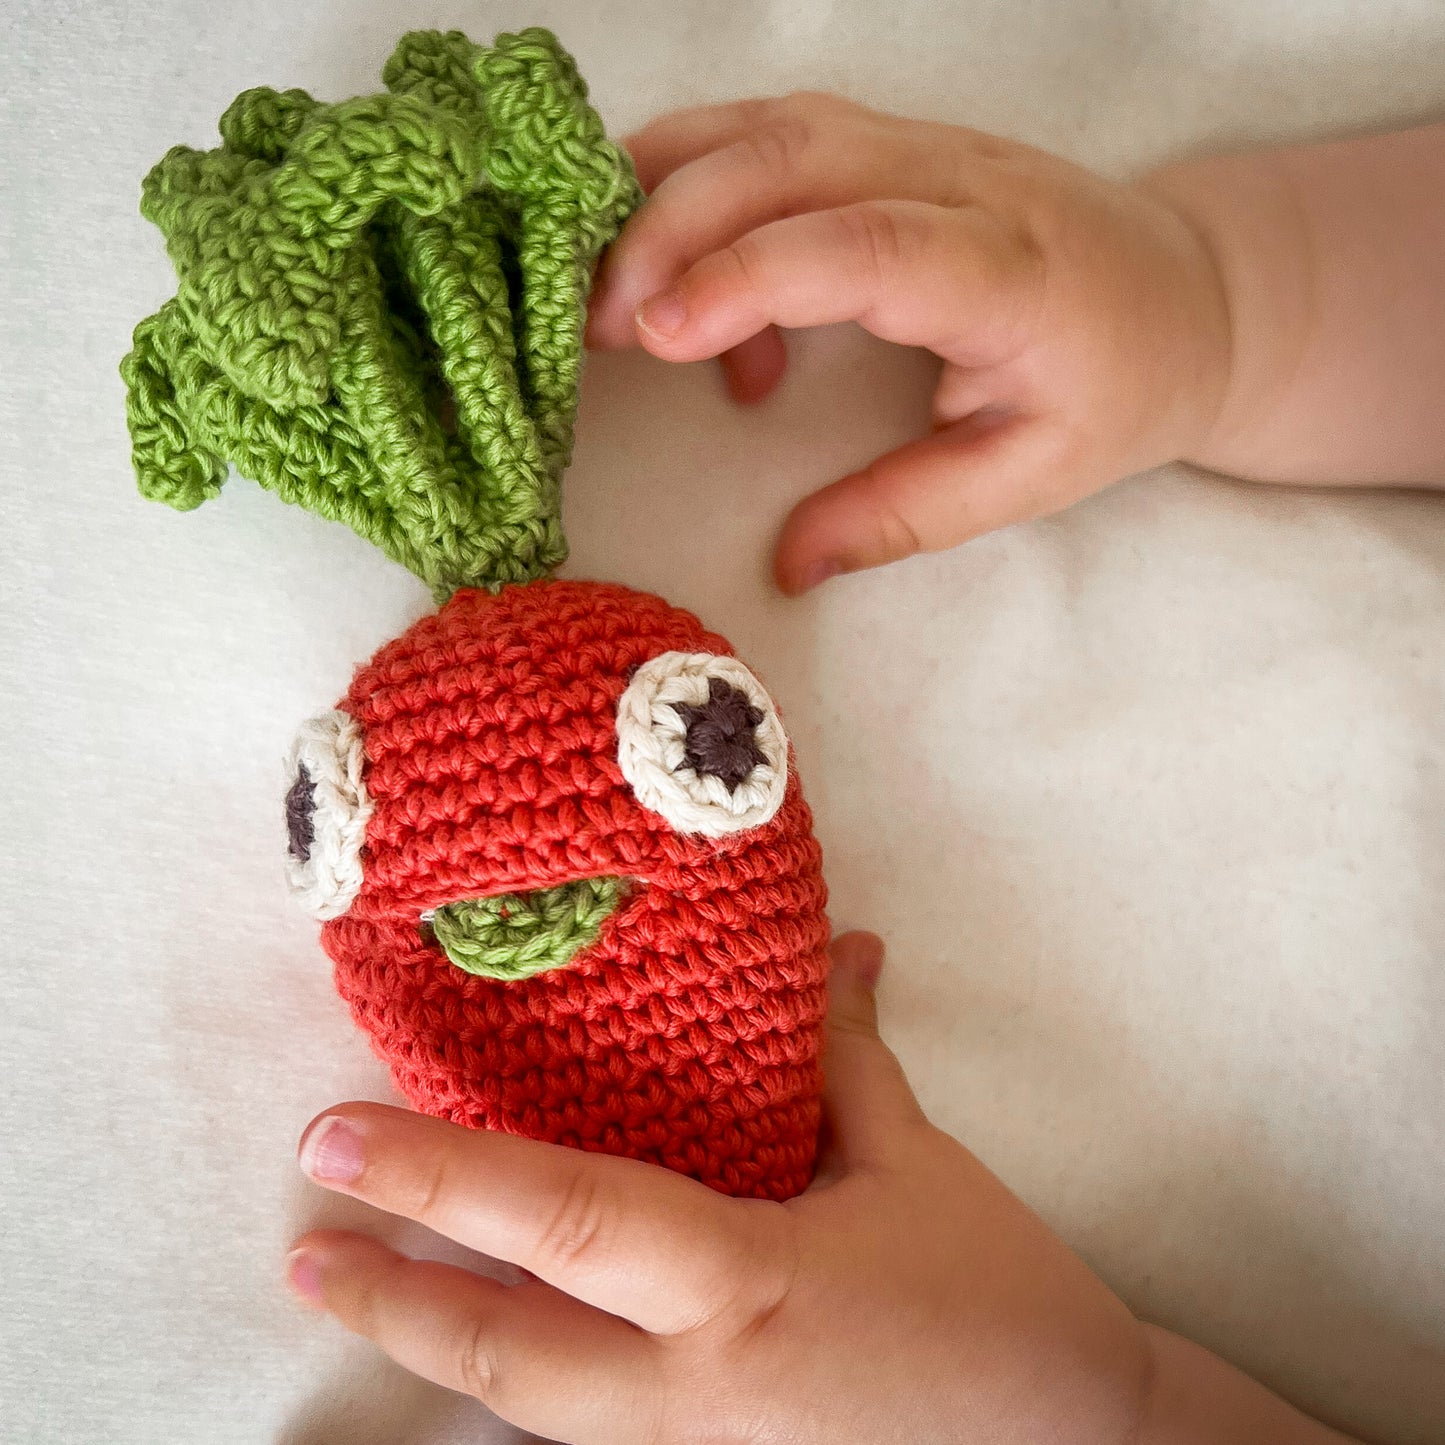 Hochet Carotte pour bébé en crochet en coton bio fait main avec petit grelot. Hauteur 17 cm, couleur orange